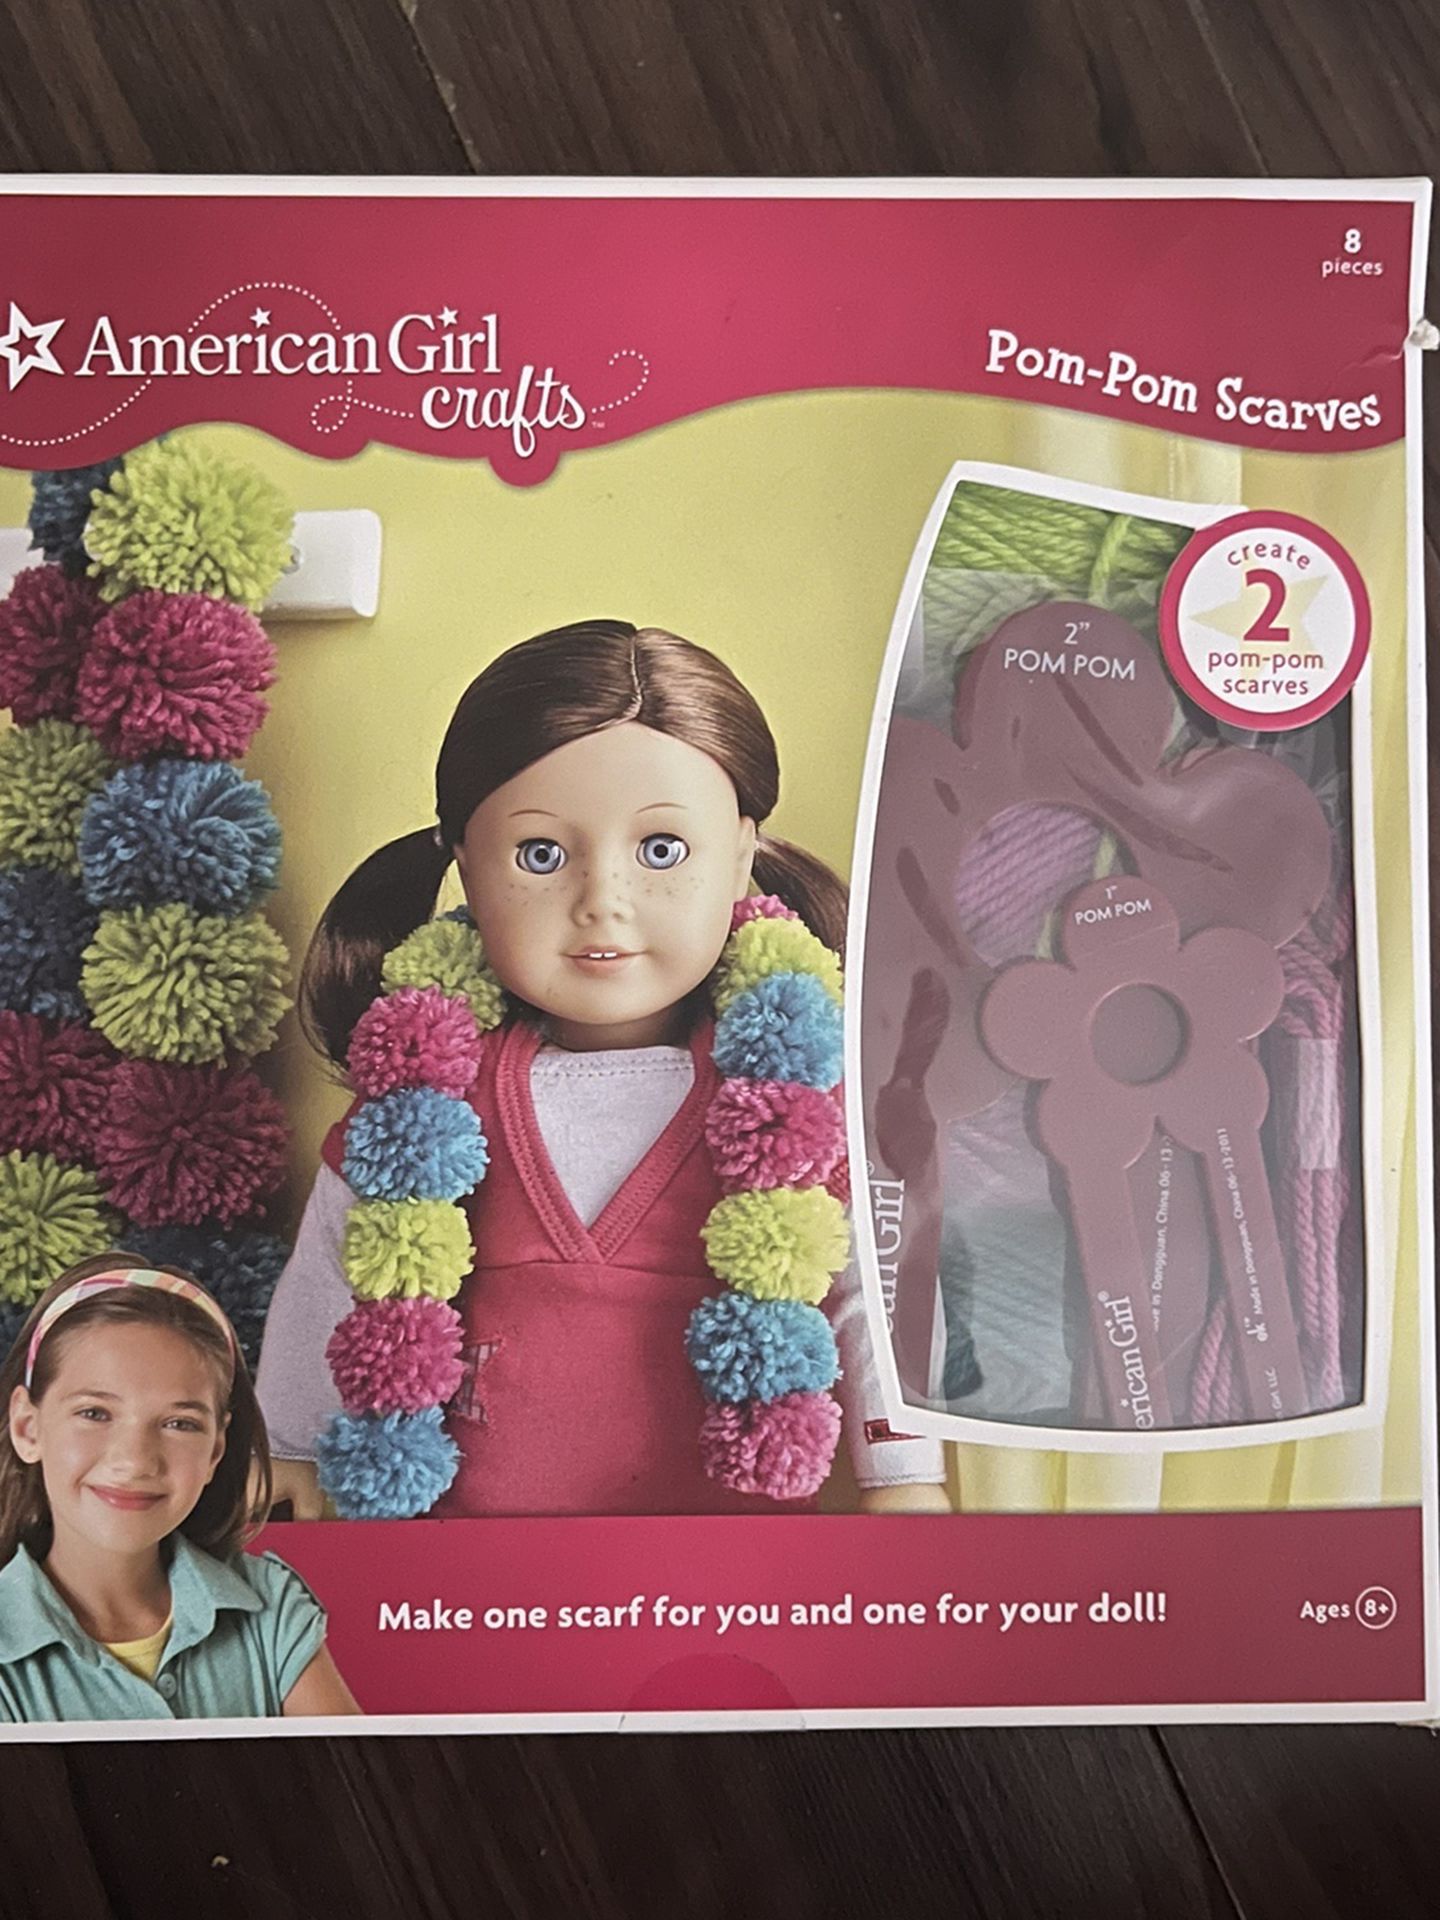 American Girl Pom-Pom Scarves Kit